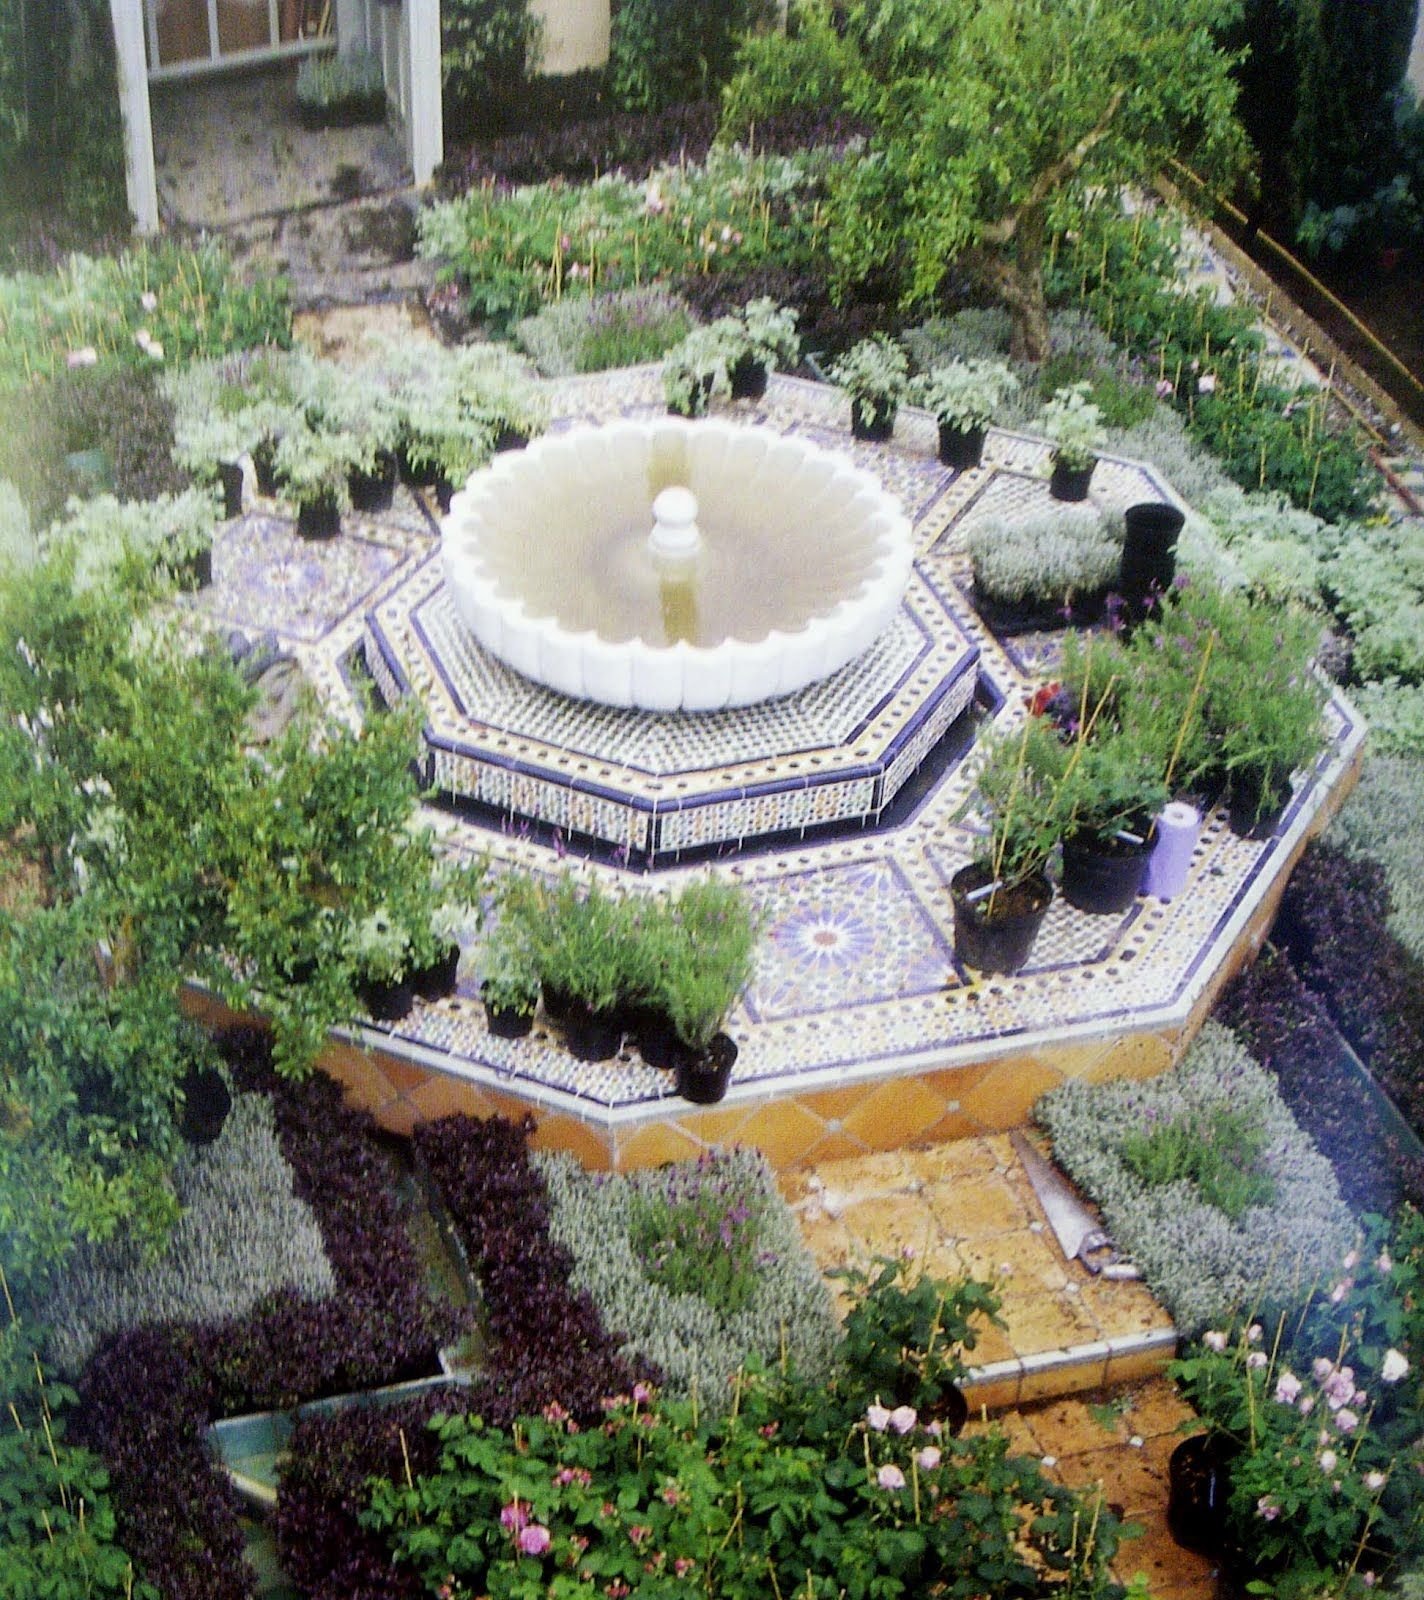 Мусульманский сад. Испано-мавританские сады террасы. Испано-мавританский стиль сада. Мусульманские сады мавританский стиль ландшафта. Испано мавританский сад план.